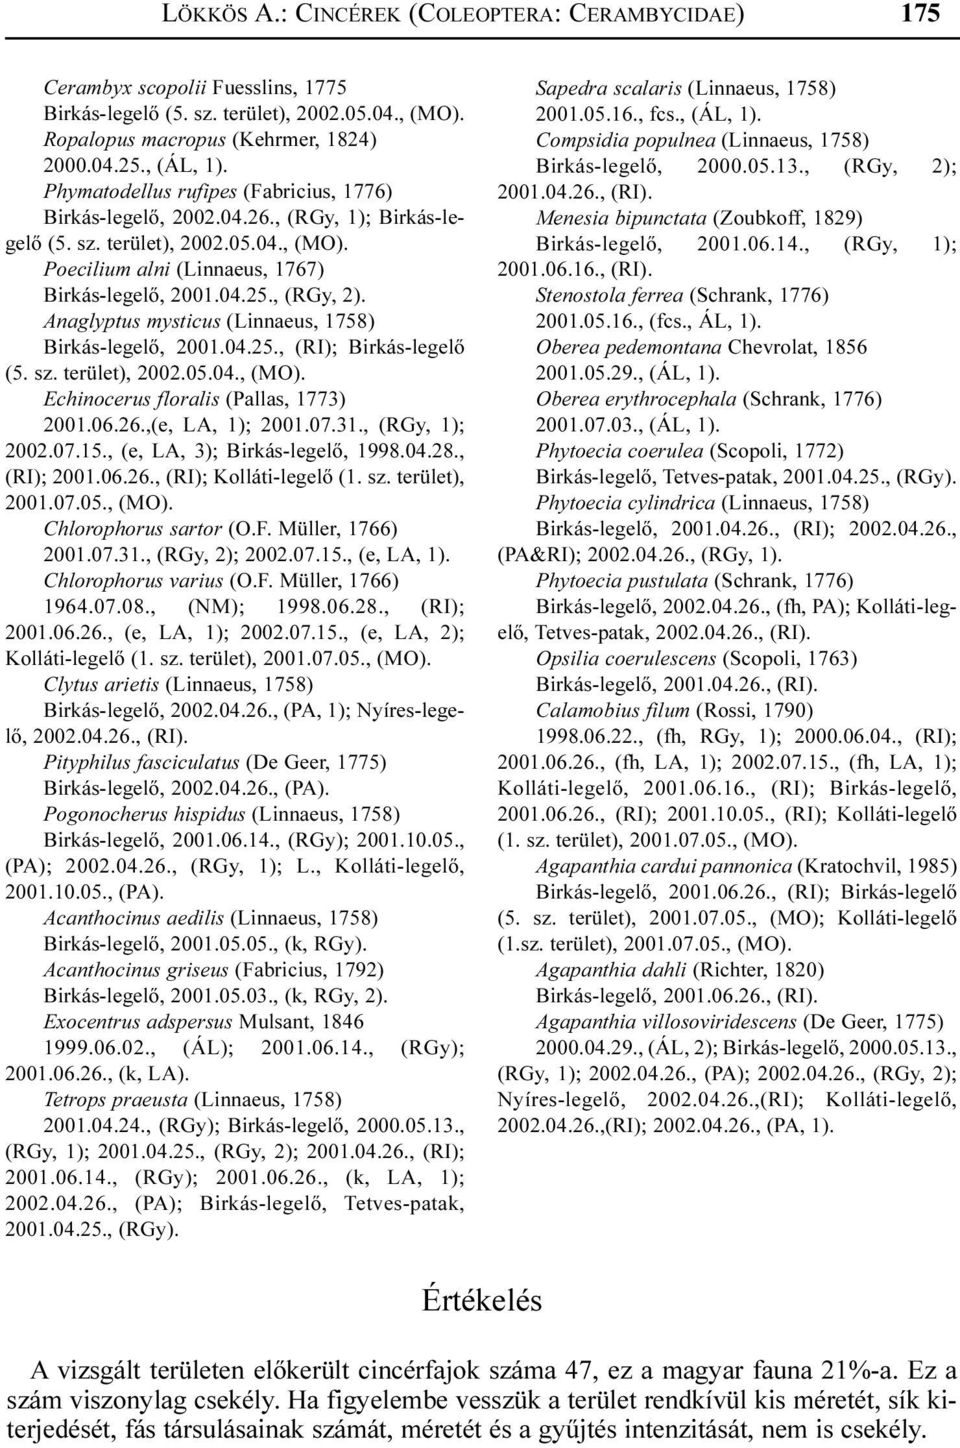 Anaglyptus mysticus (Linnaeus, 1758) Birkás-legelõ, 2001.04.25., (RI); Birkás-legelõ (5. sz. terület), 2002.05.04., (MO). Echinocerus floralis (Pallas, 1773) 2001.06.26.,(e, LA, 1); 2001.07.31.